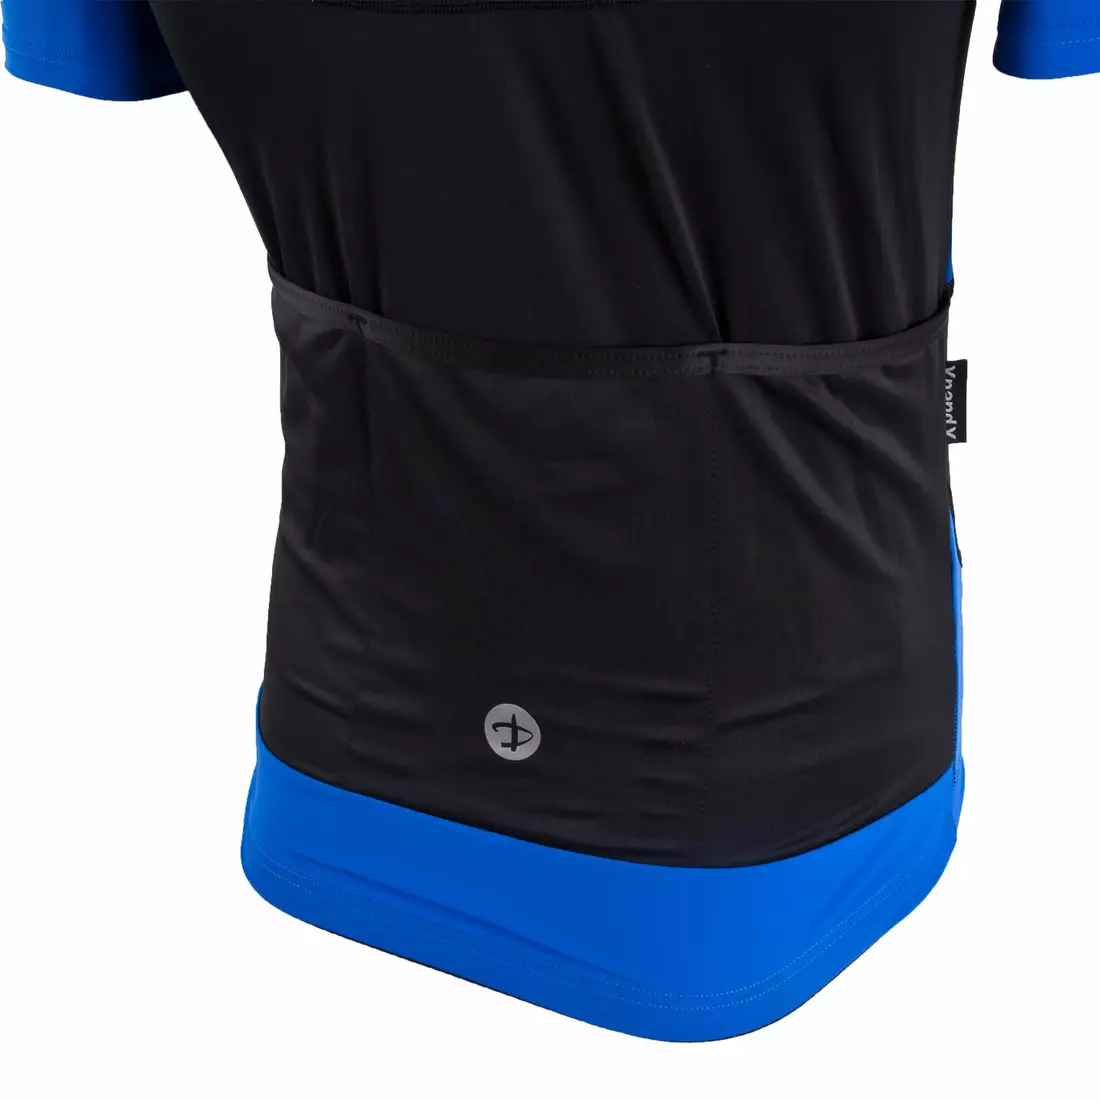 DEKO BURAQ pánsky cyklistický dres, krátky rukáv čierny / modrý